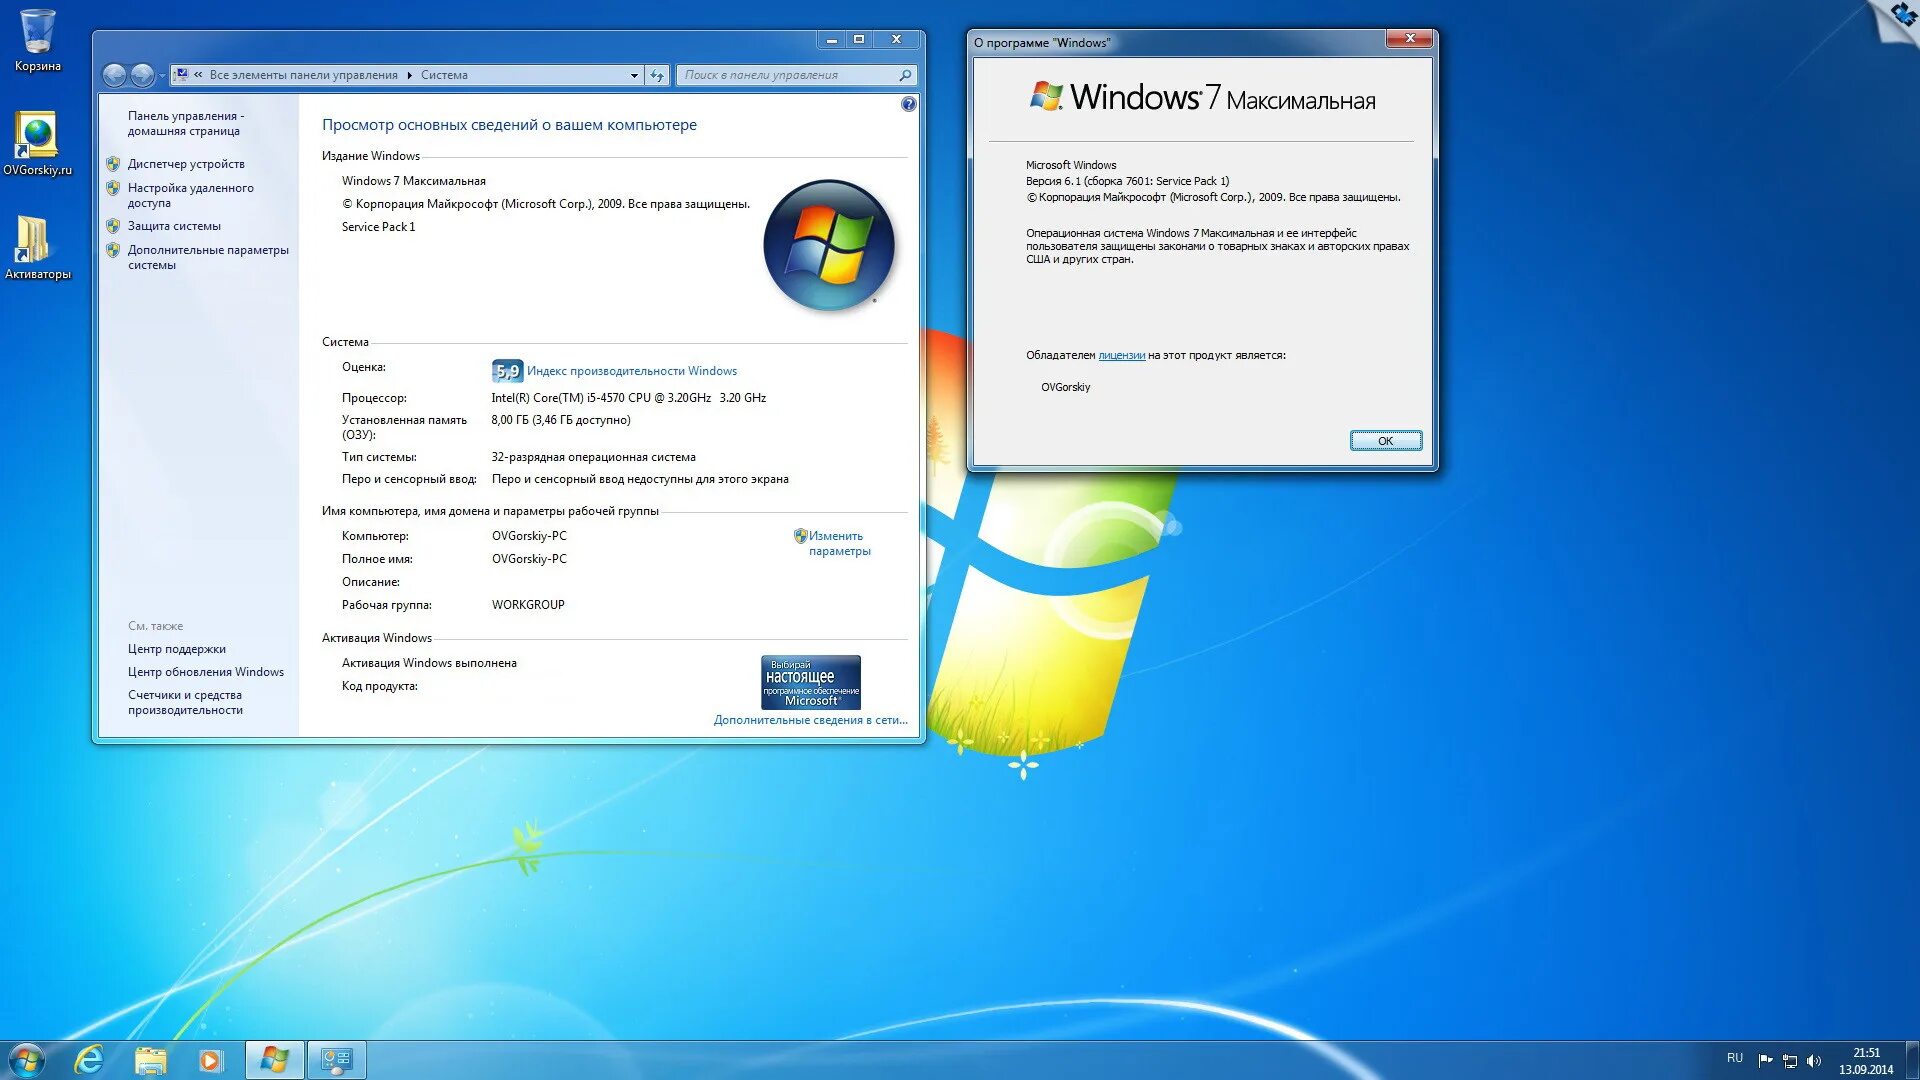 Установочный ОС Windows 7. Характеристики ОС Windows 7. Windows 7 максимальная. Windows 7 максимальная компьютер. Качество windows 7